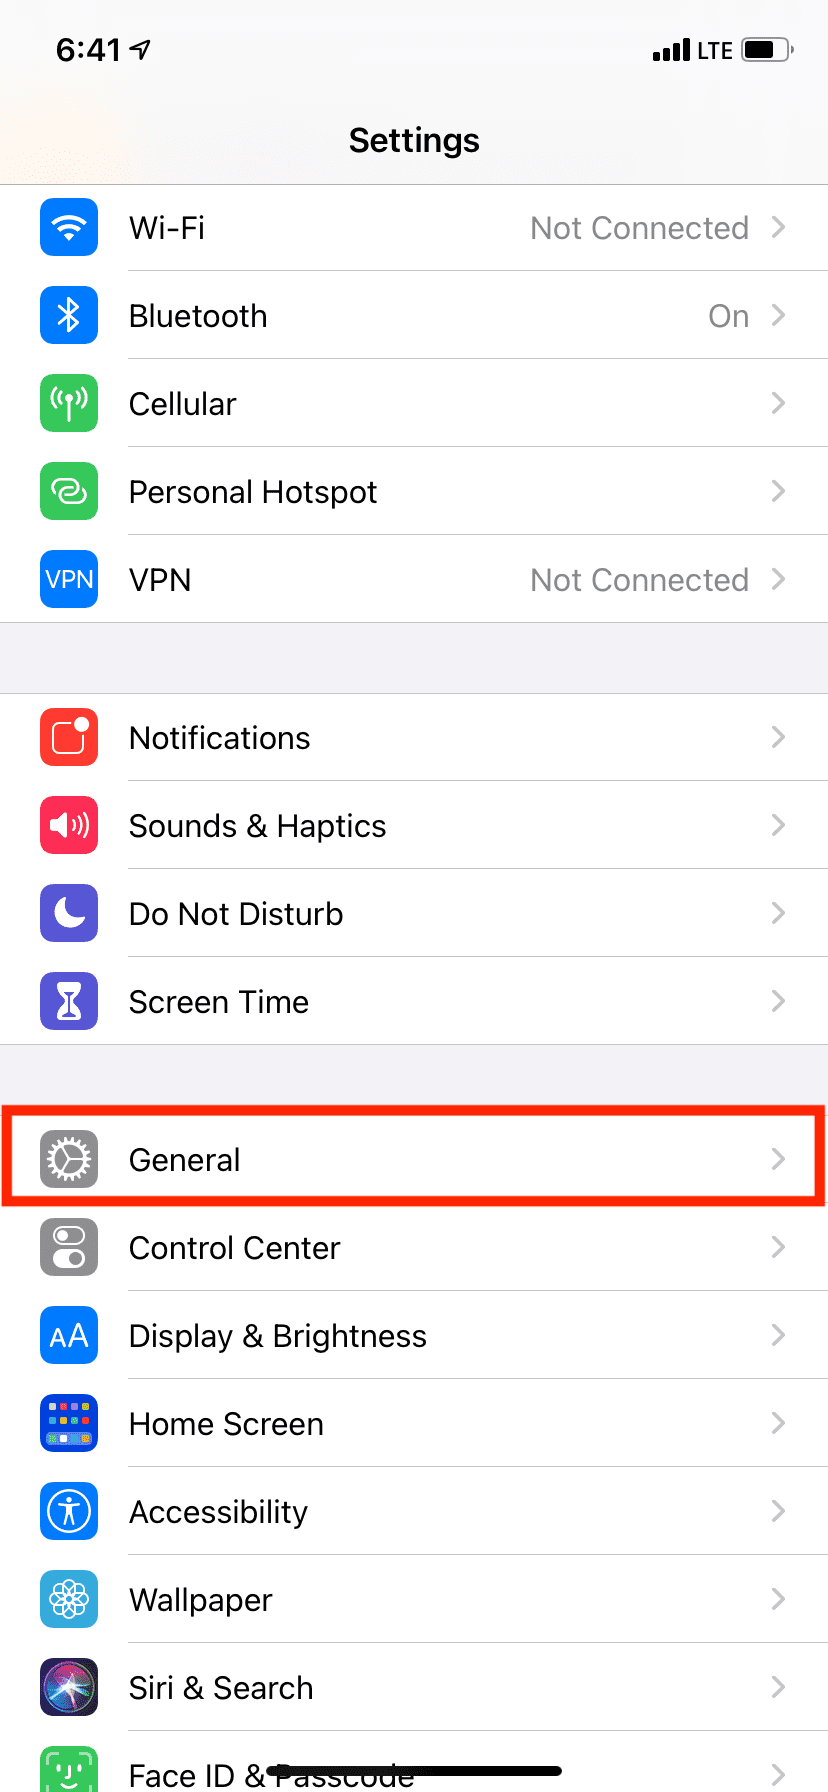 Tap General in iPhone Settings app